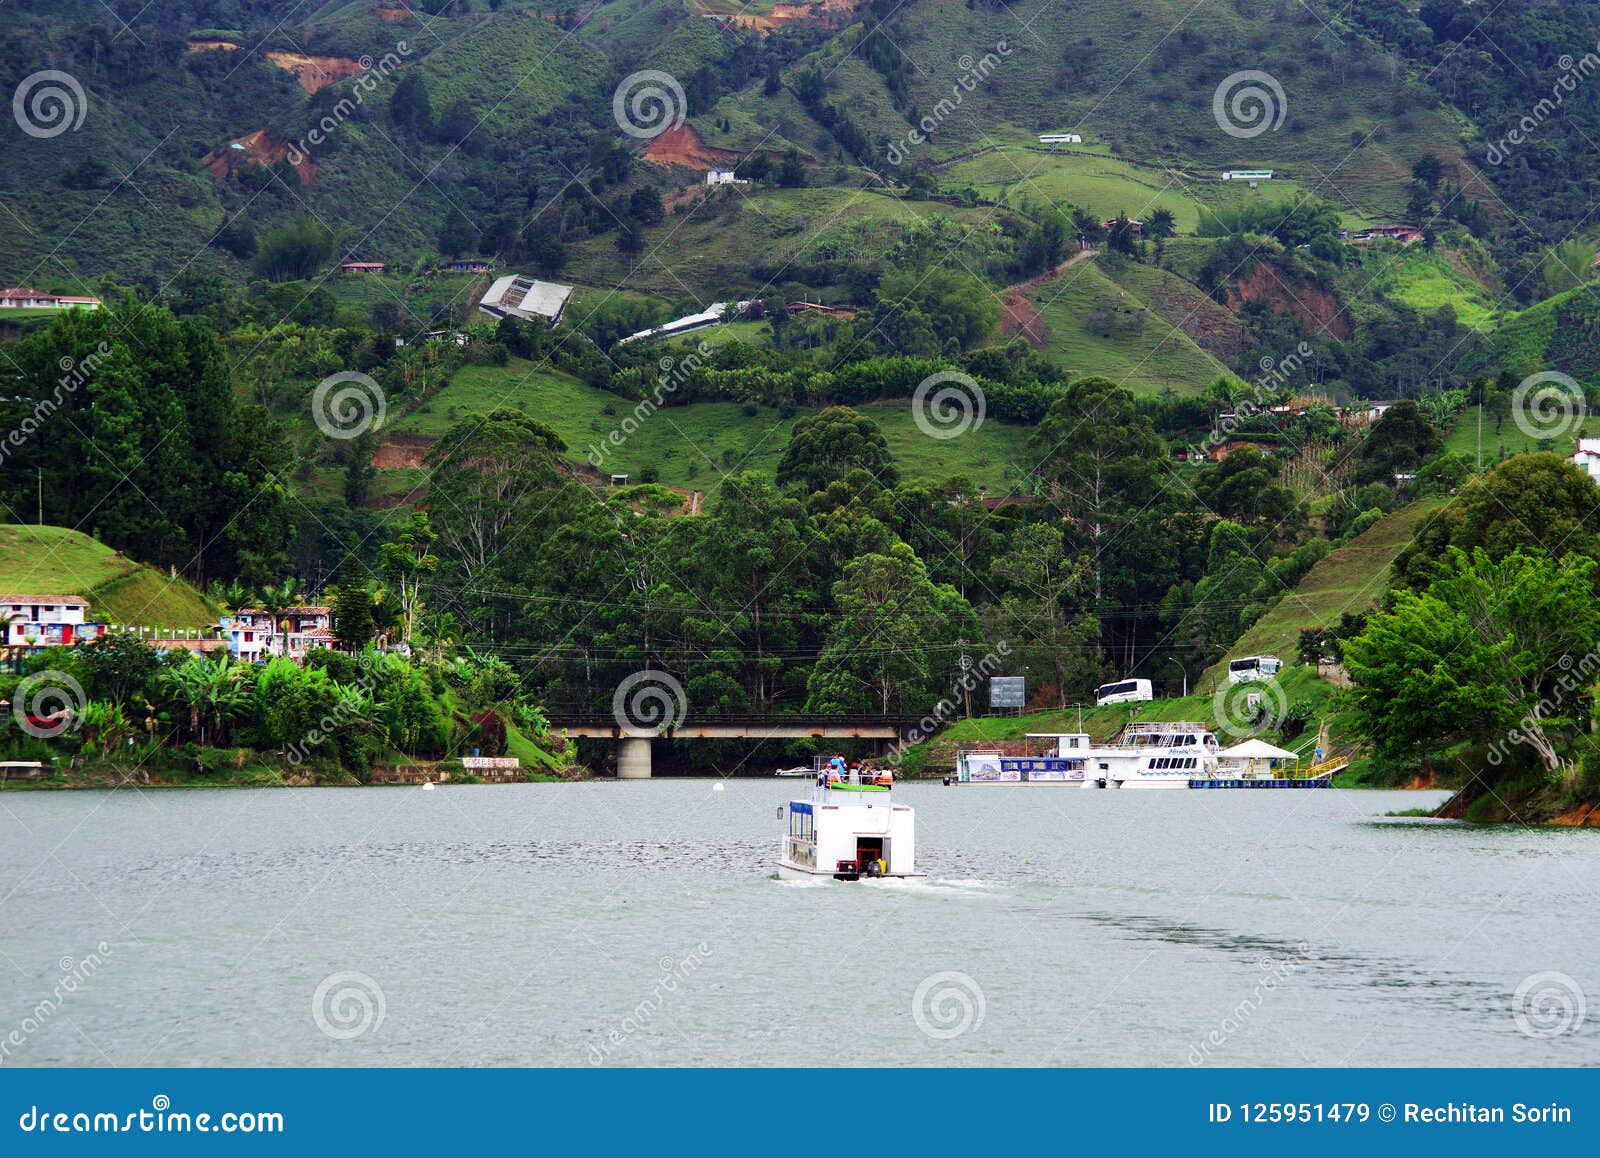 the picturesque guatape lake - el penol - in antioquia department